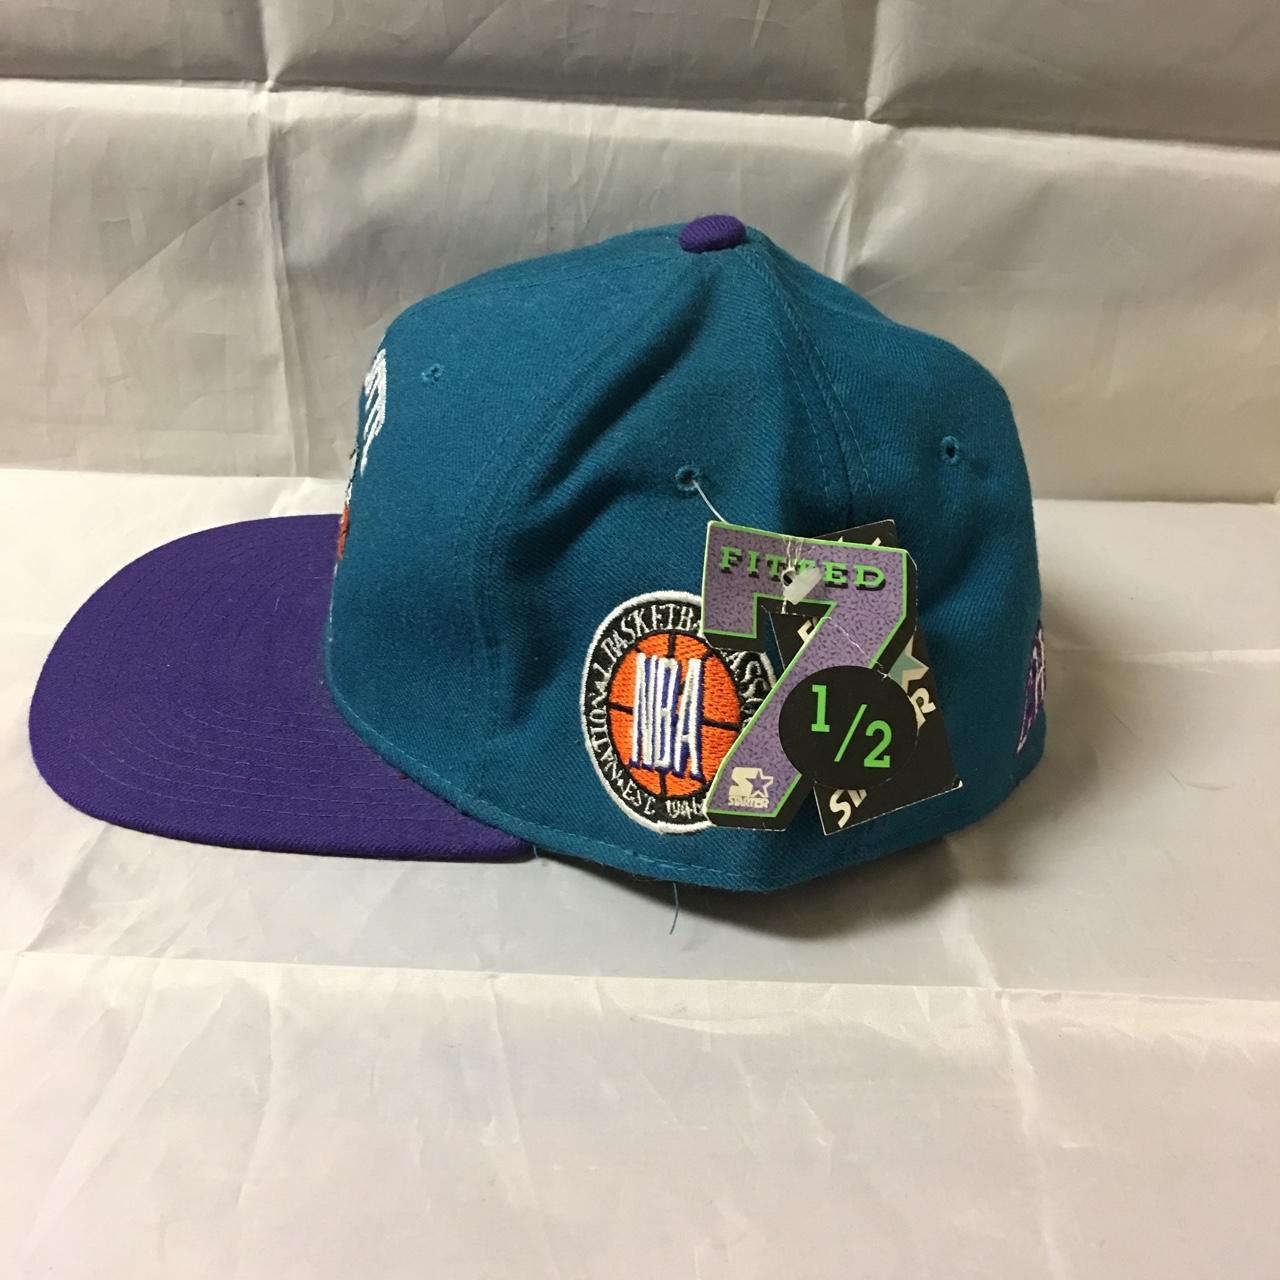 Vintage 90s Charlotte Hornets Starter Cap Hat - Depop